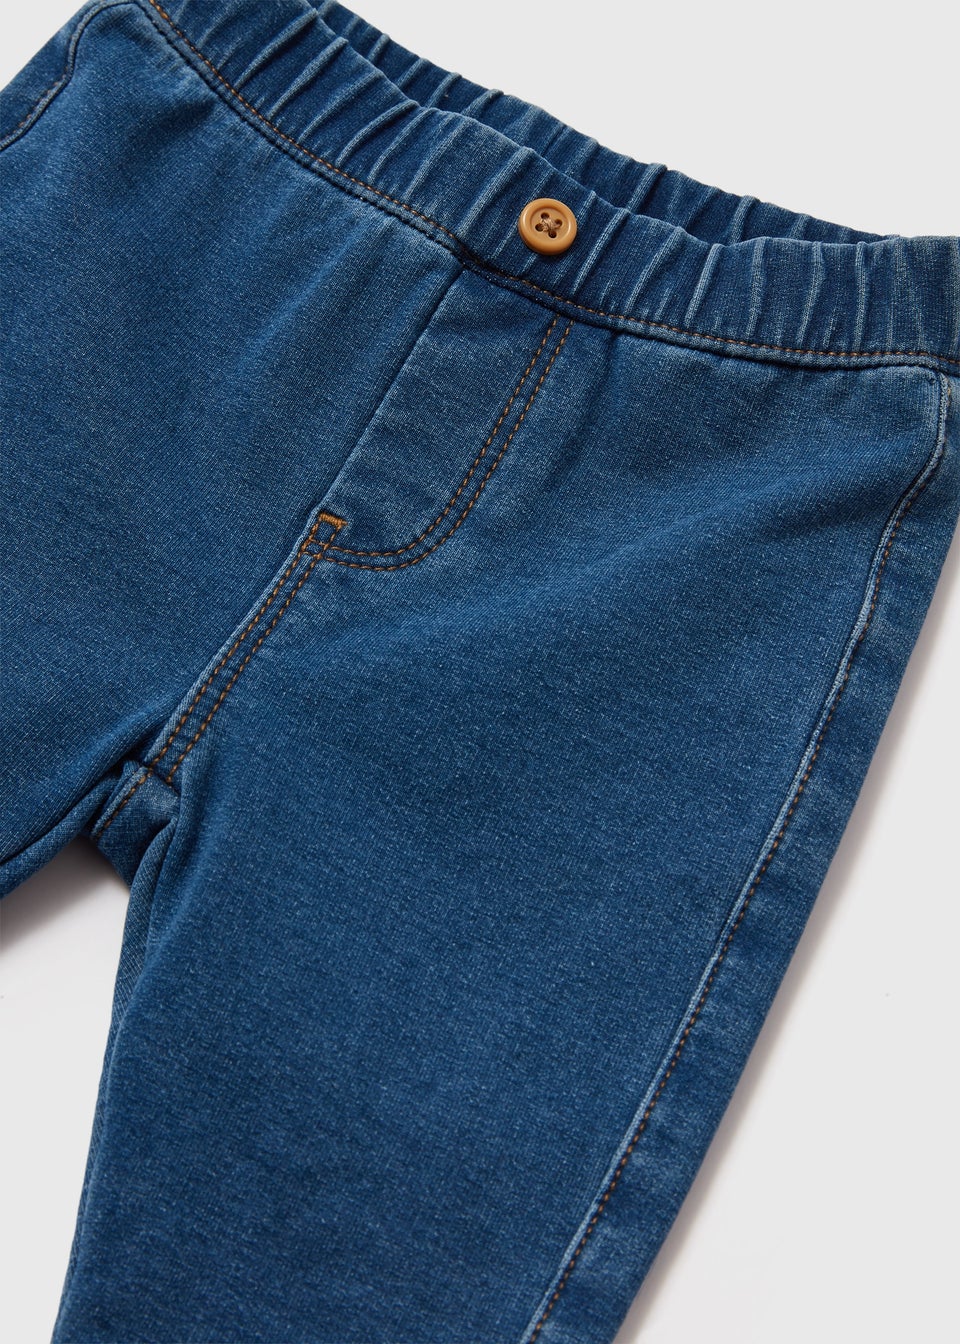 Baby Blue Denim Jeans (Newborn-23mths)